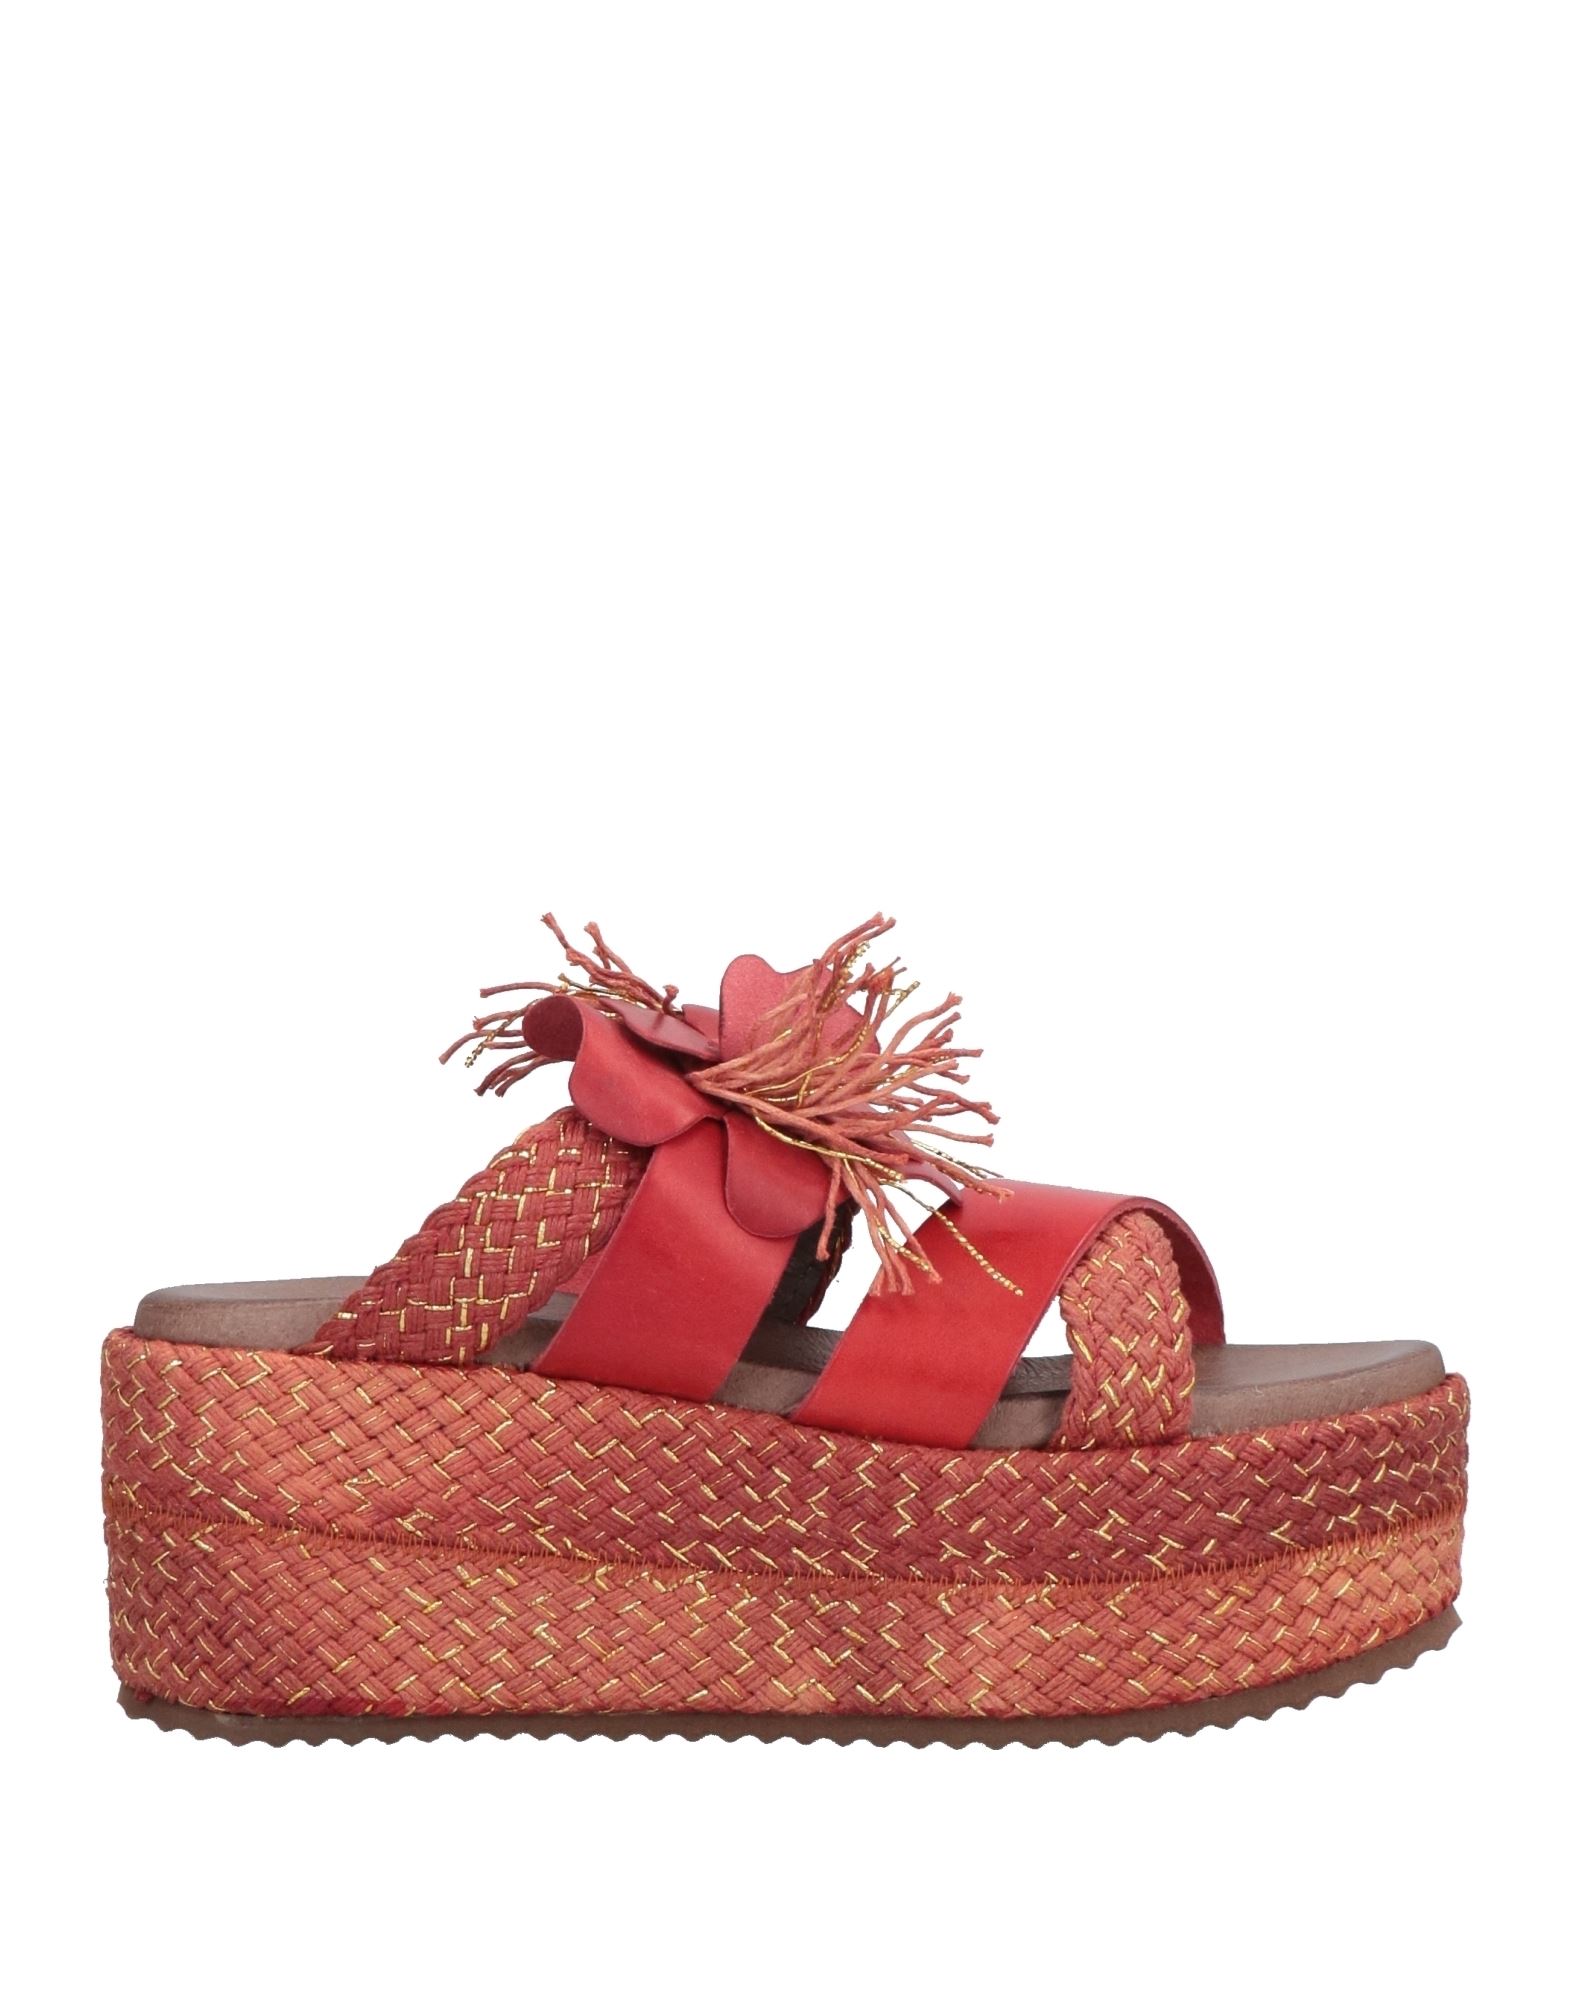 Cafènoir Woman Sandals Brick Red Size 7 Soft Leather, Textile Fibers